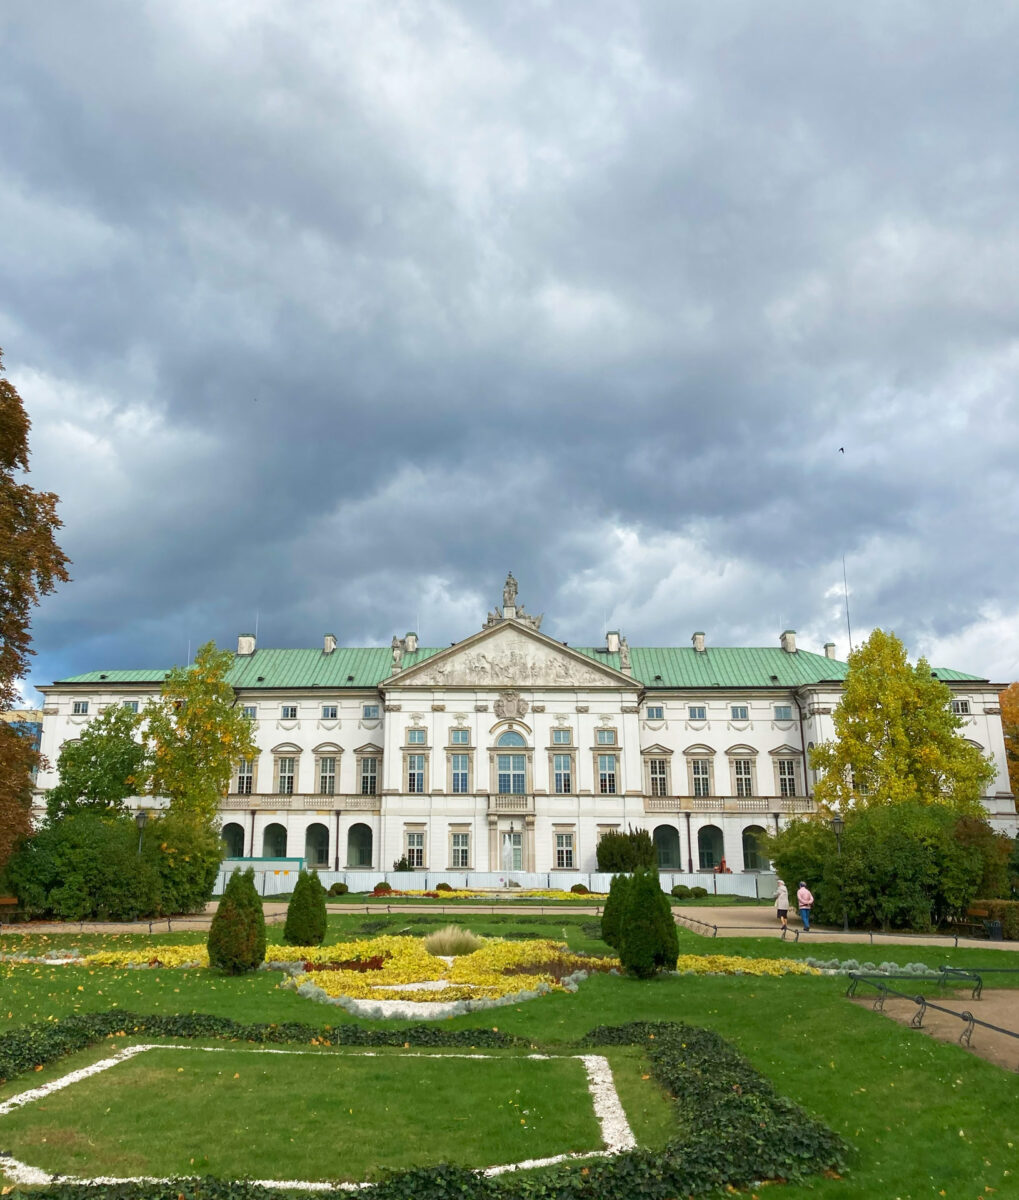 Krasinski Gardens & Palace